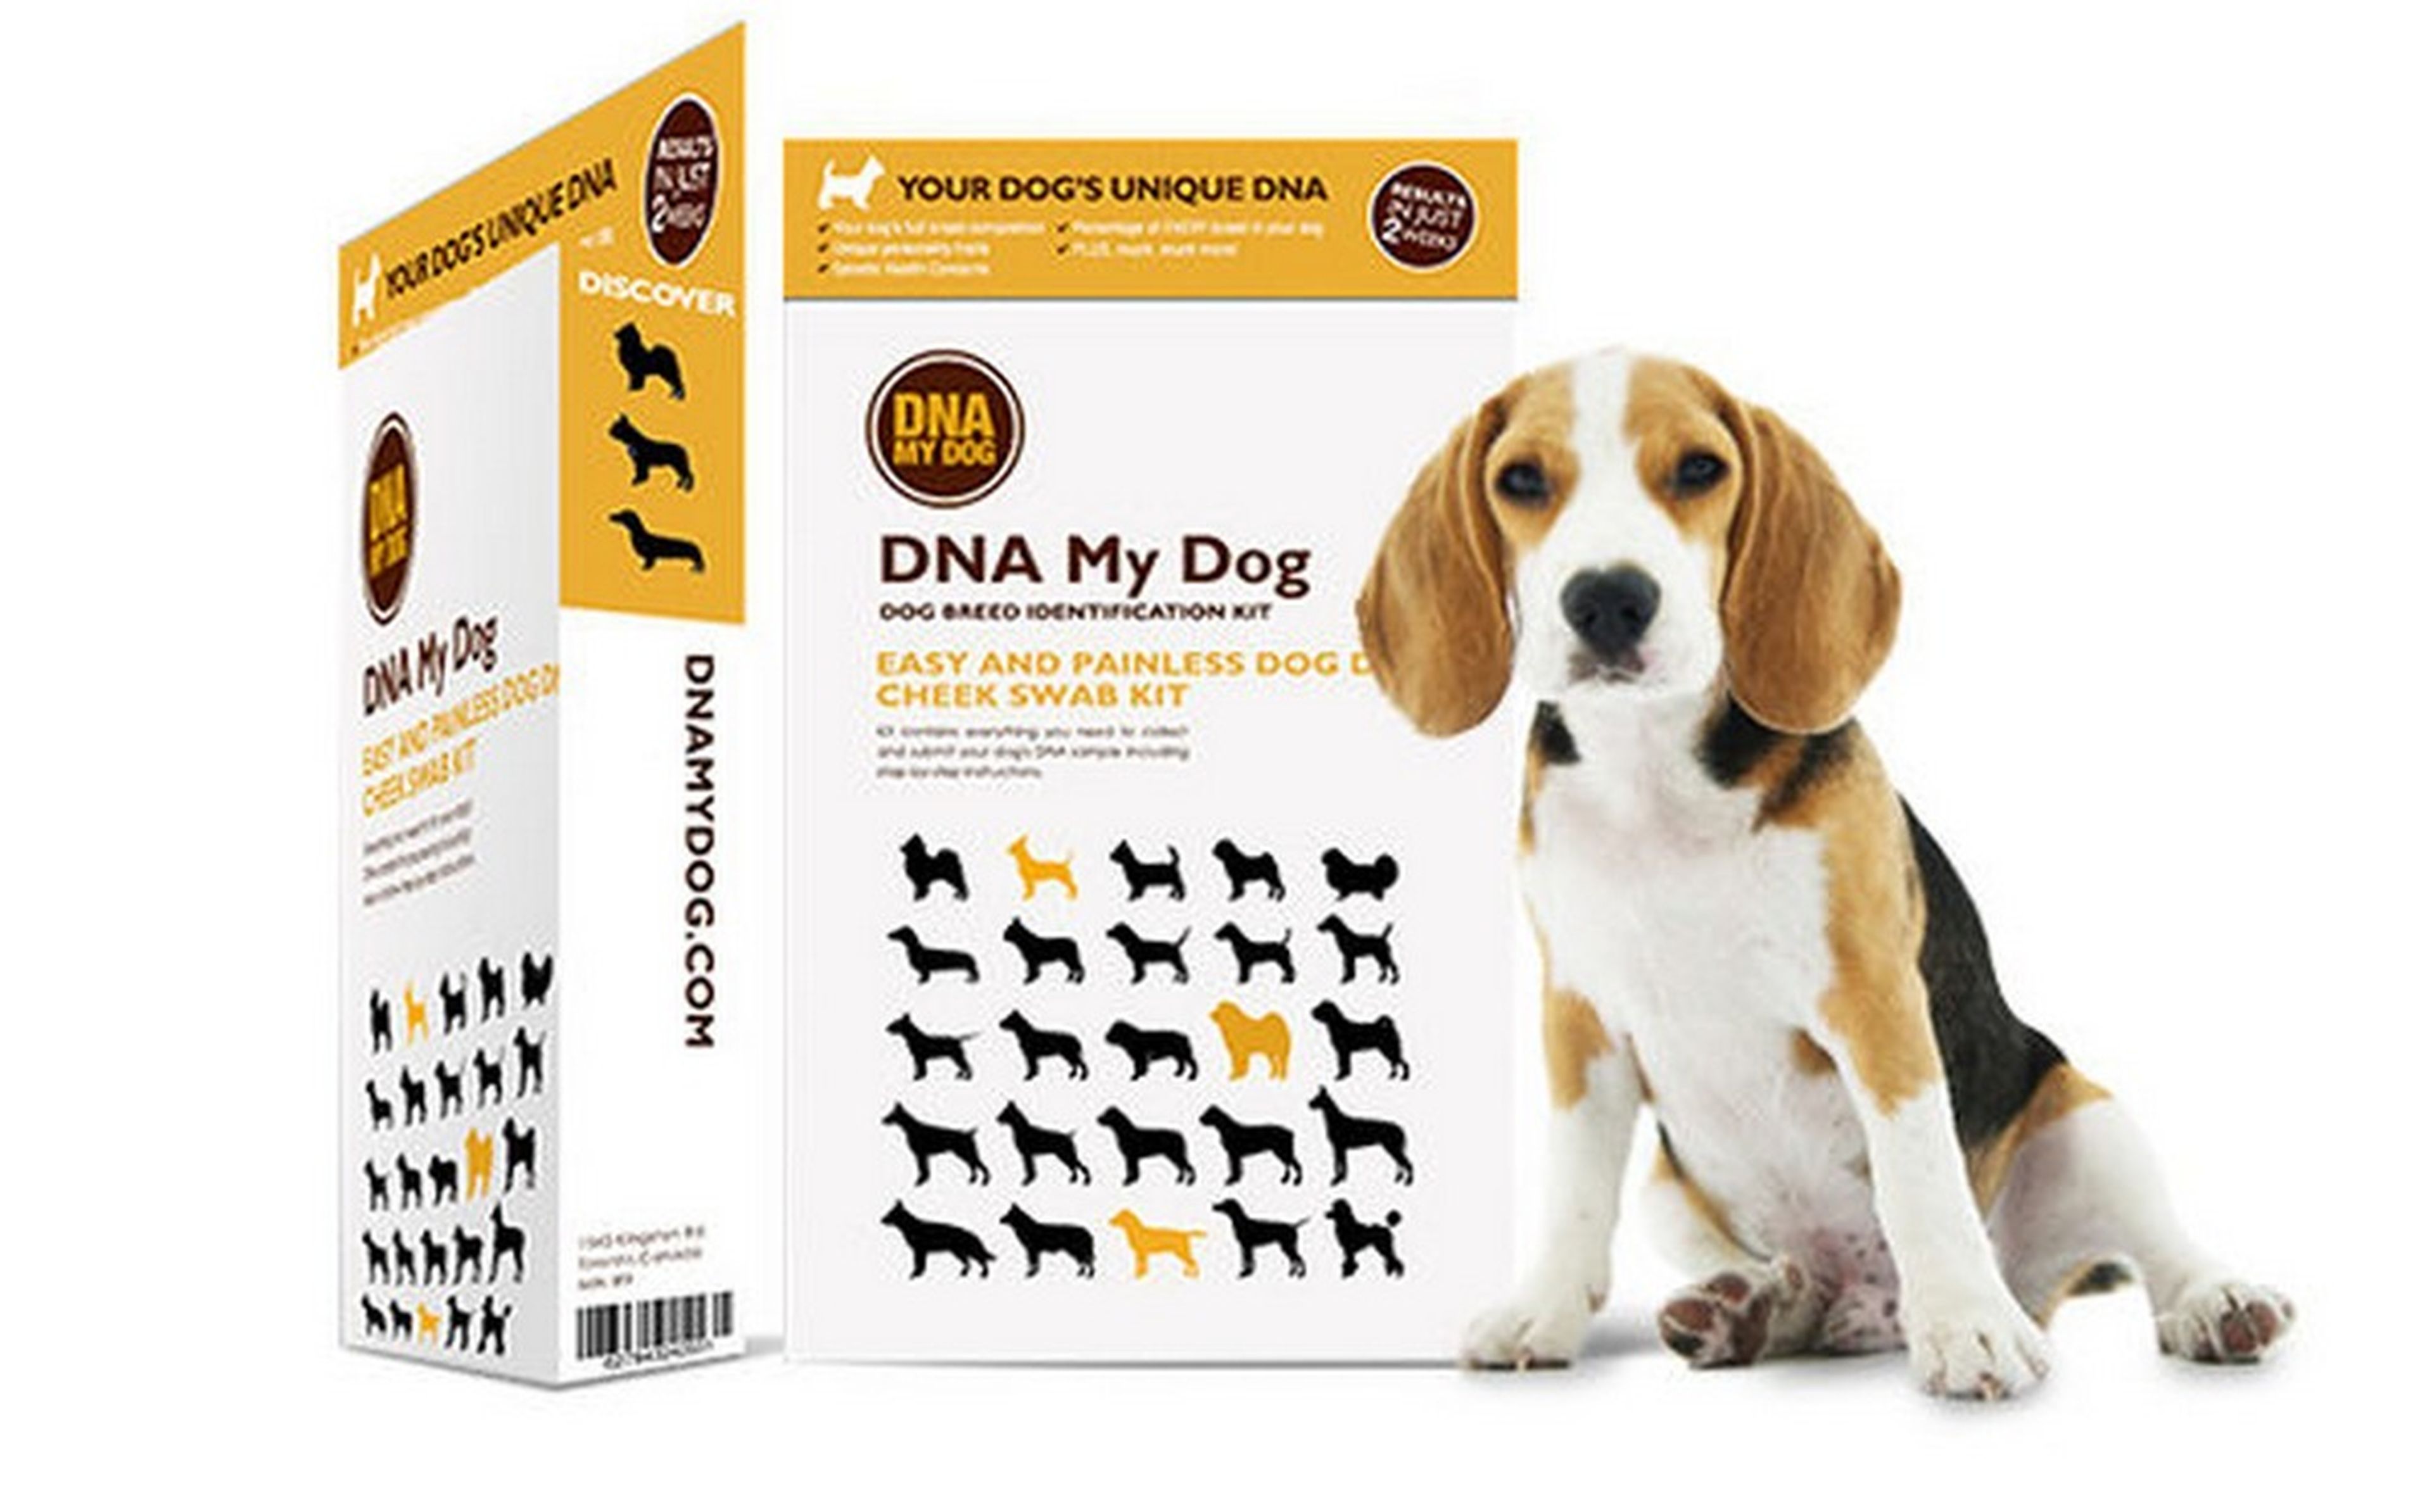 ¿Quieres saber de qué raza es tu perro? Ya puedes hacerle un test de ADN en casa